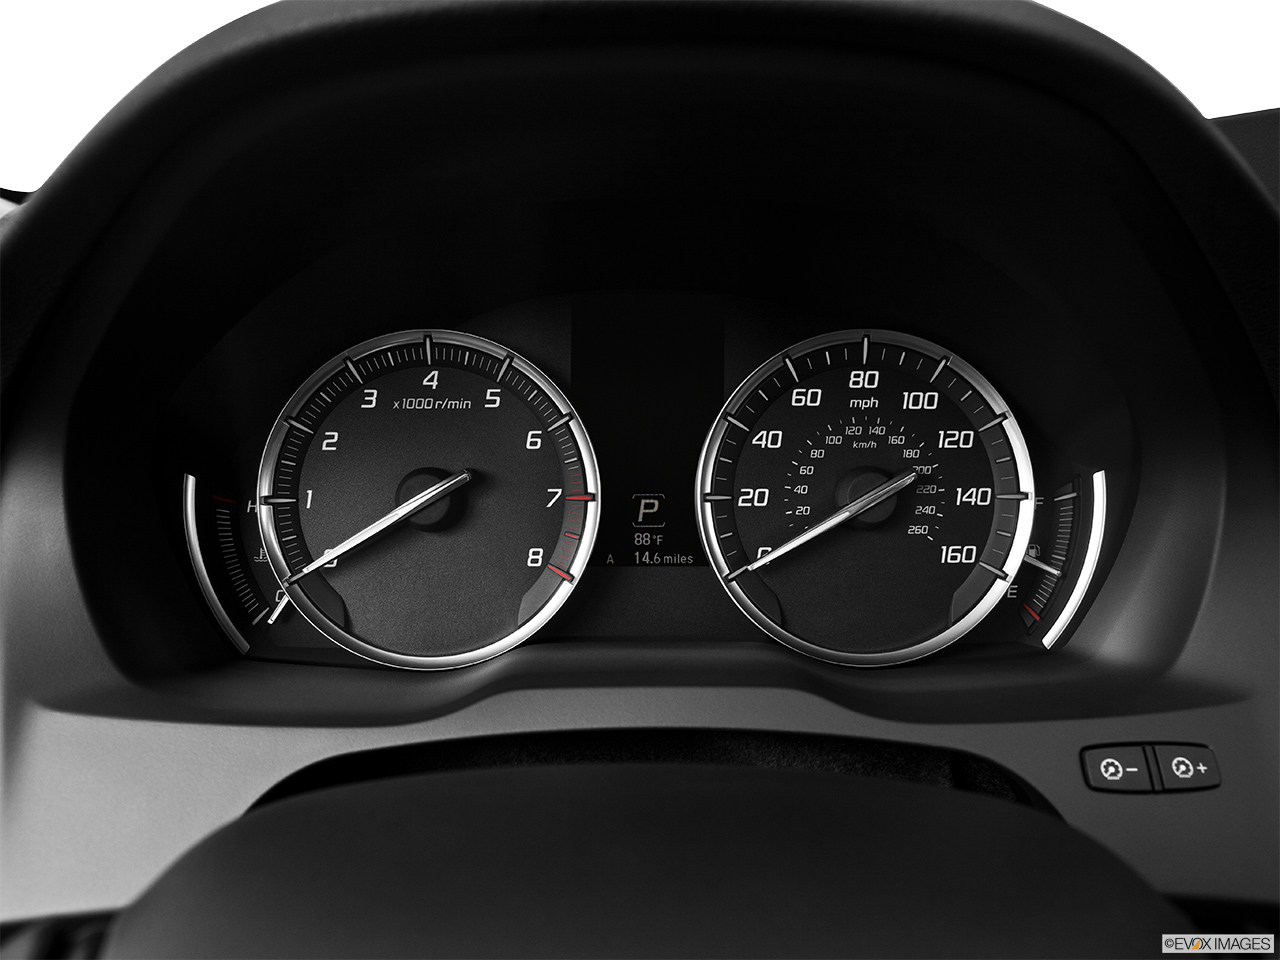 2014 Acura MDX SH-AWD Speedometer/tachometer. 